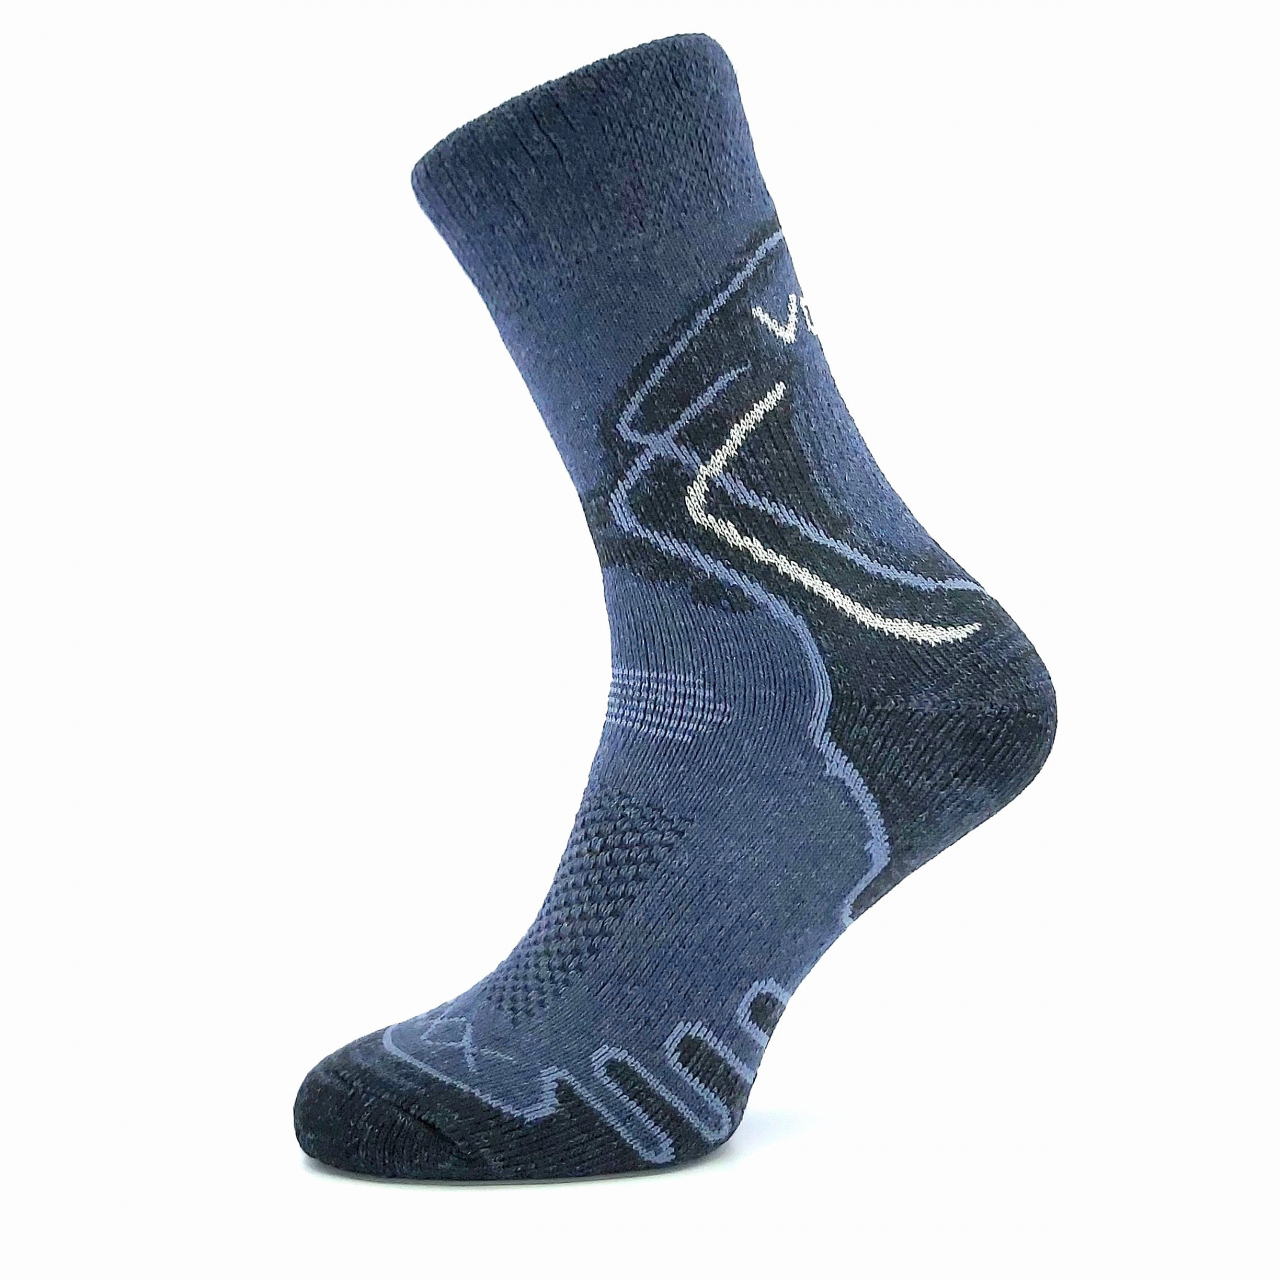 Ponožky trekingové unisex Voxx Limit III - tmavě modré, 35-38